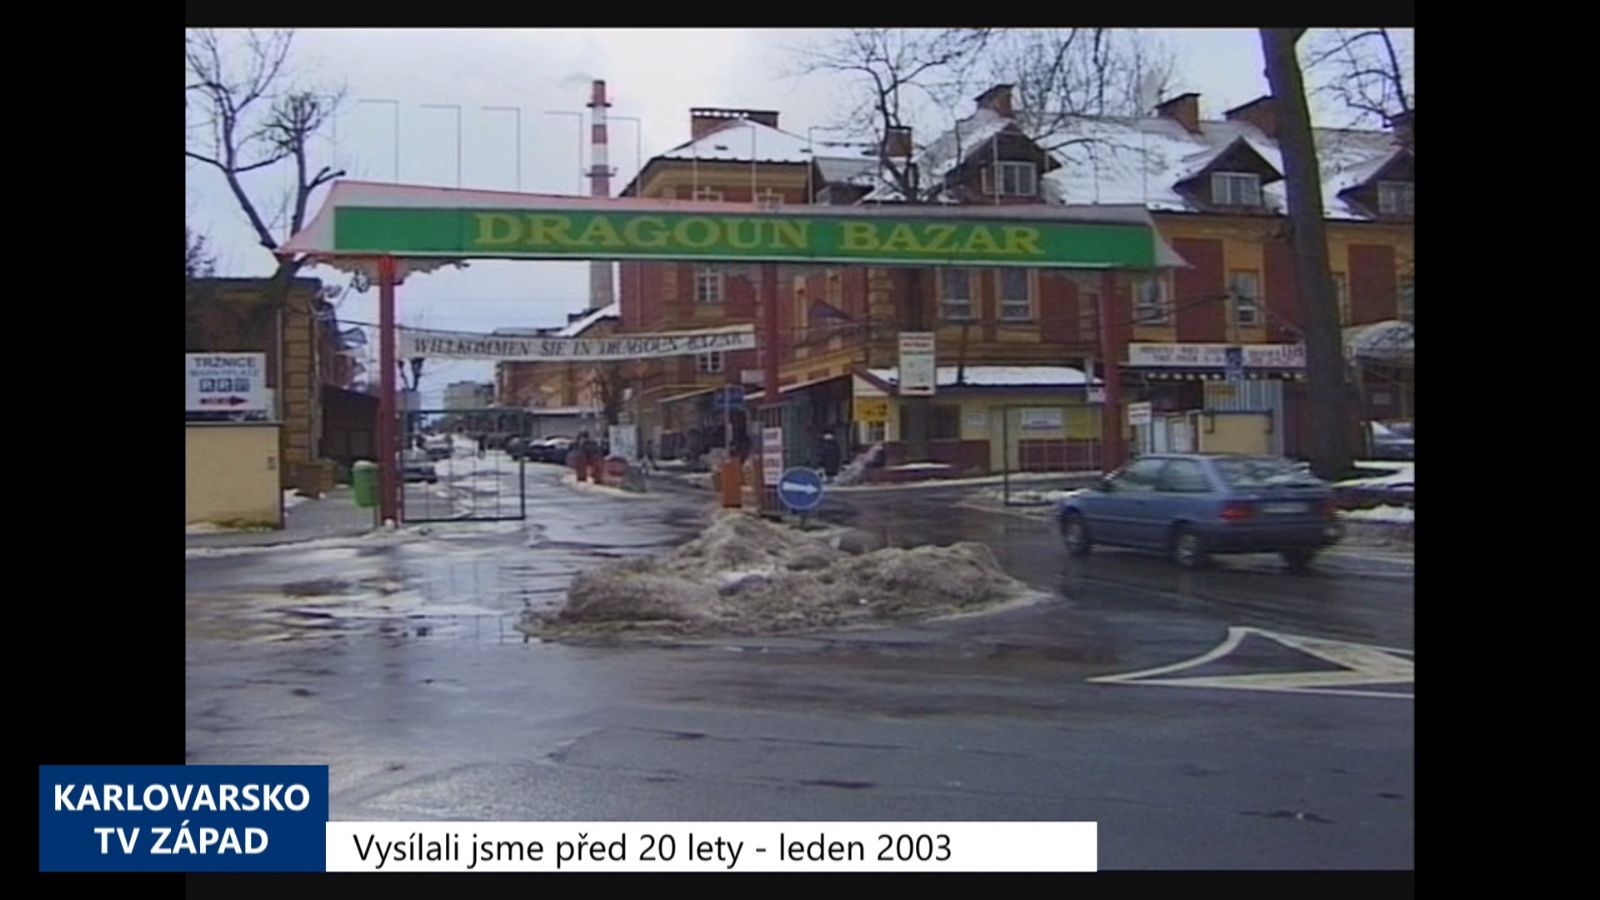 2003 – Cheb: Lanzaro dostalo okamžitou výpověď z tržnice Dragoun (TV Západ)